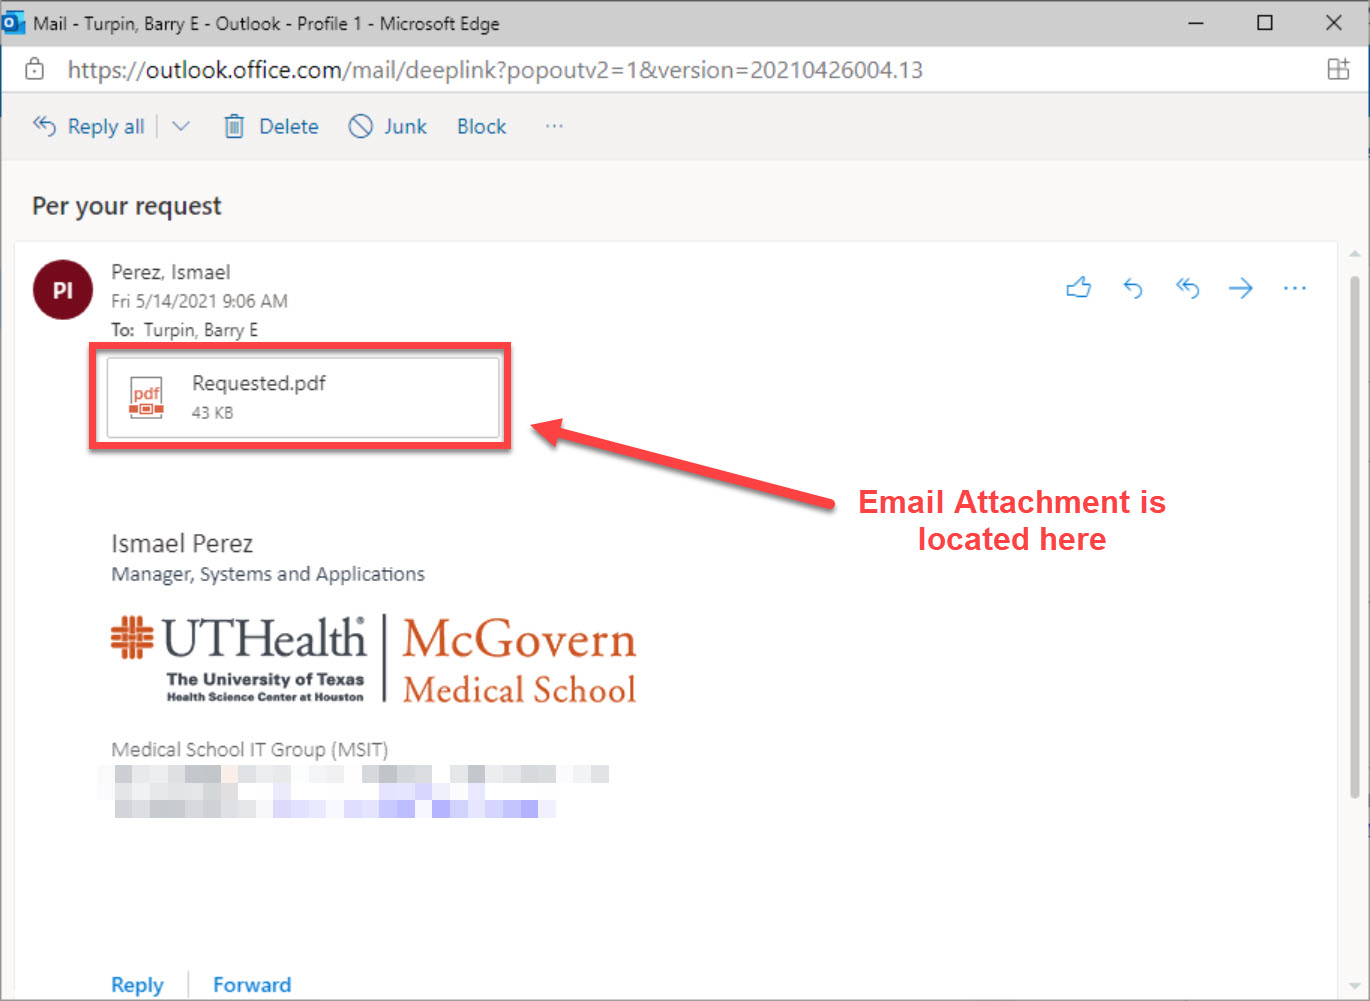 一个图像显示了电子邮件中附件位置的位置 - 在电子邮件视图屏幕的左上角，直接在发件人的名称和电子邮件的接收器下方。